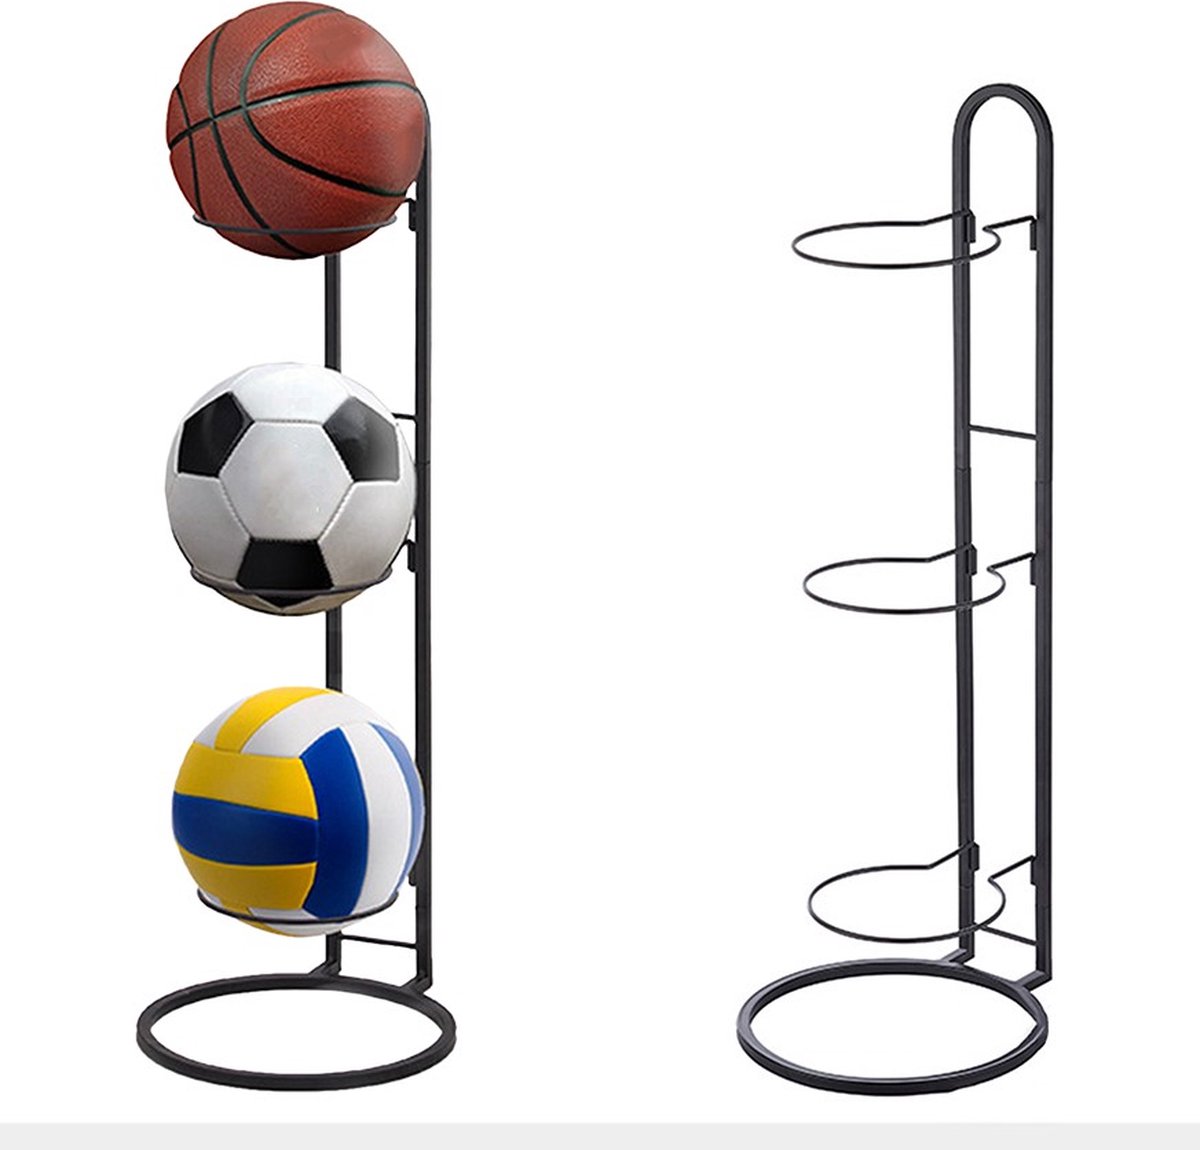 Ballen standaard - ballenrek - ballen opberger - opbergrek ballen - ballenstandaard - ballen - voetbal - volleybal - basketbal